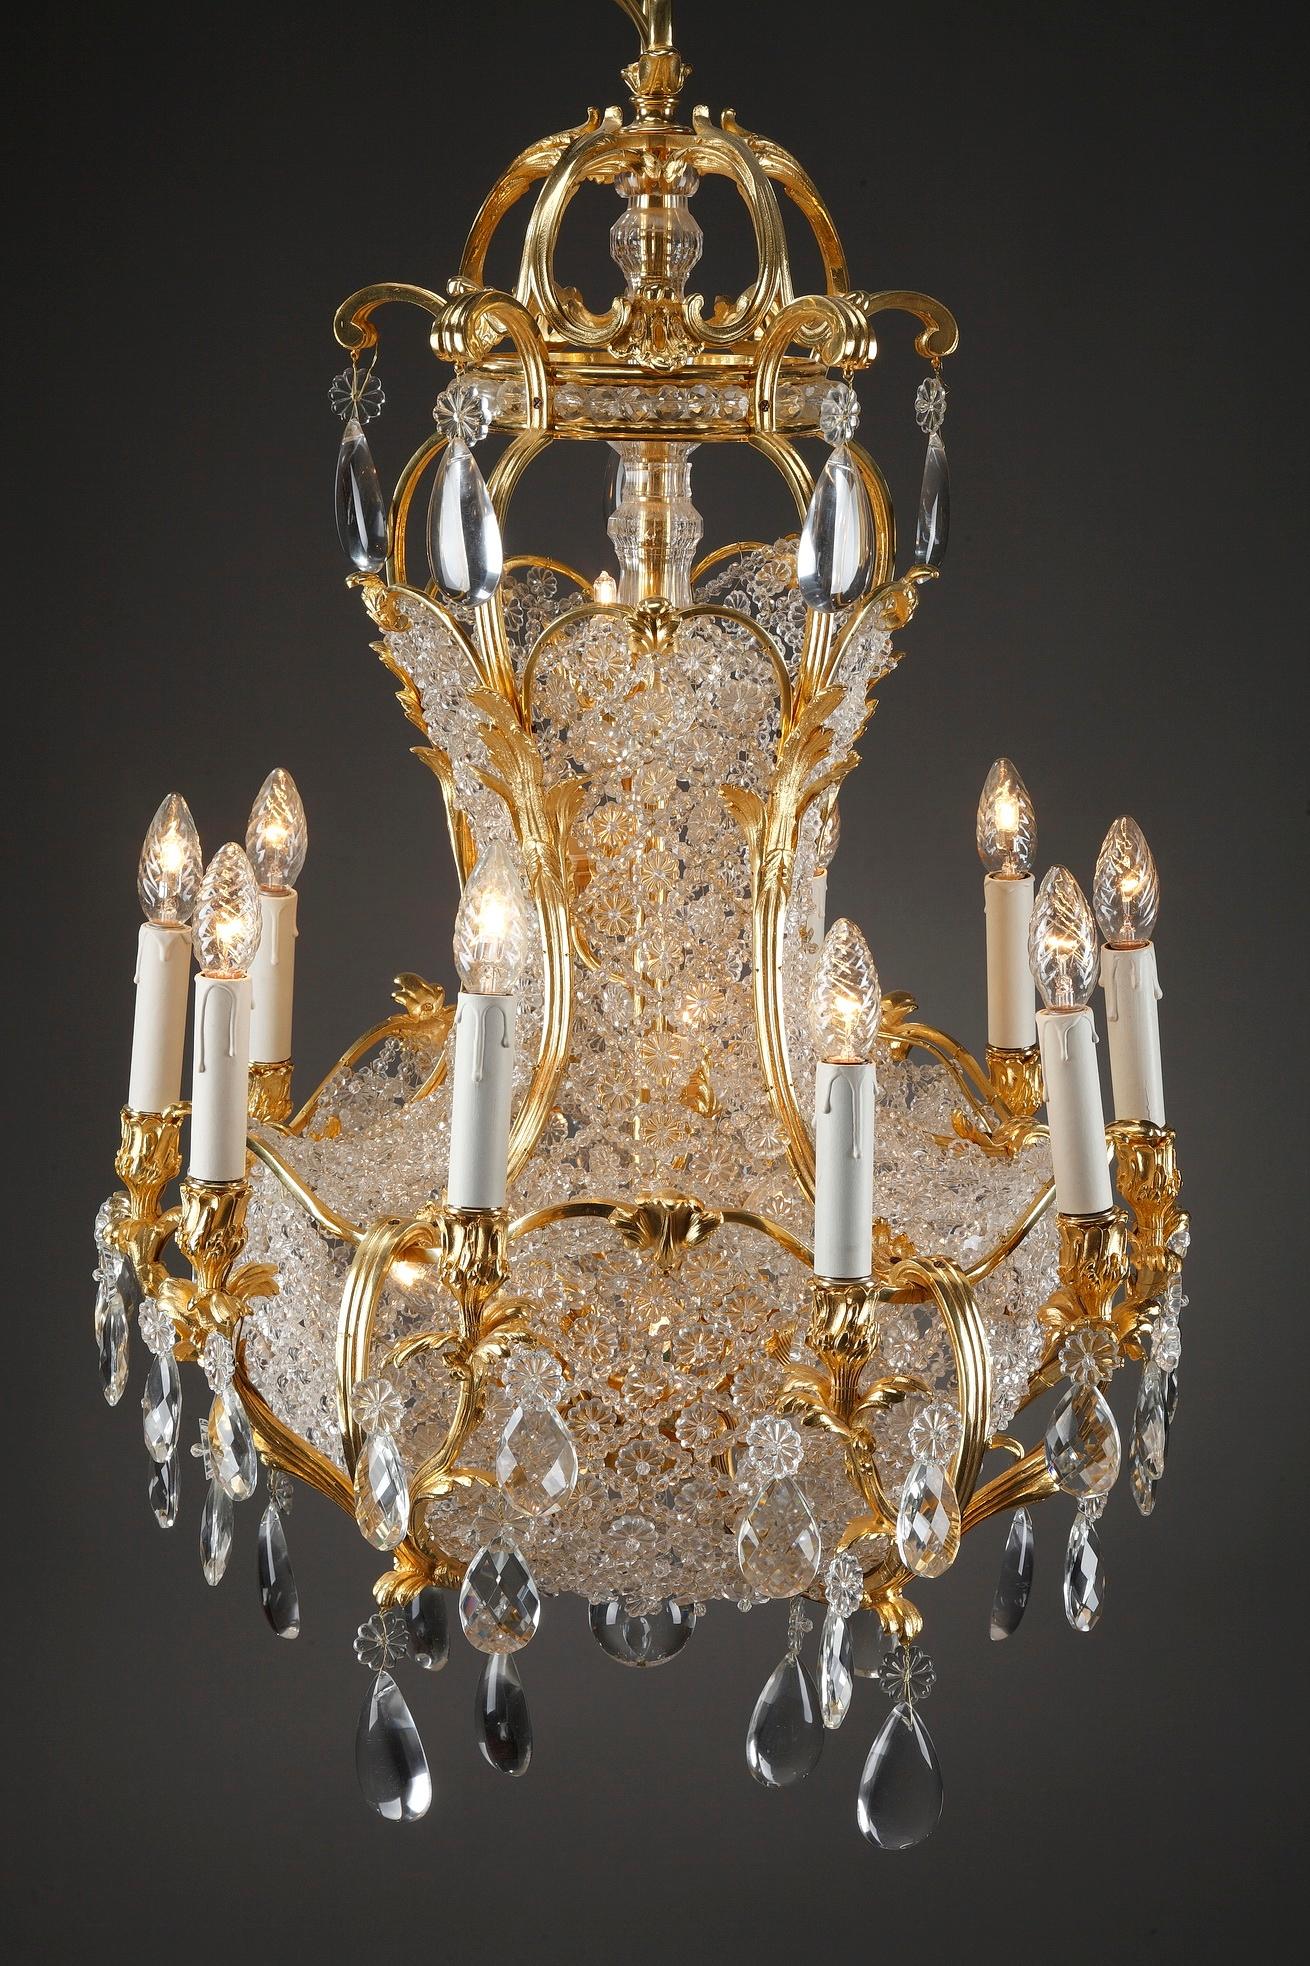 Monumental lustre à 10 lumières en forme de panier en bronze doré et cristal, fabriqué à la fin du XIXe siècle en France. De magnifiques prismes surdimensionnés, des rosettes et des gouttes de cristal poli taillées en tranche sont suspendus à des